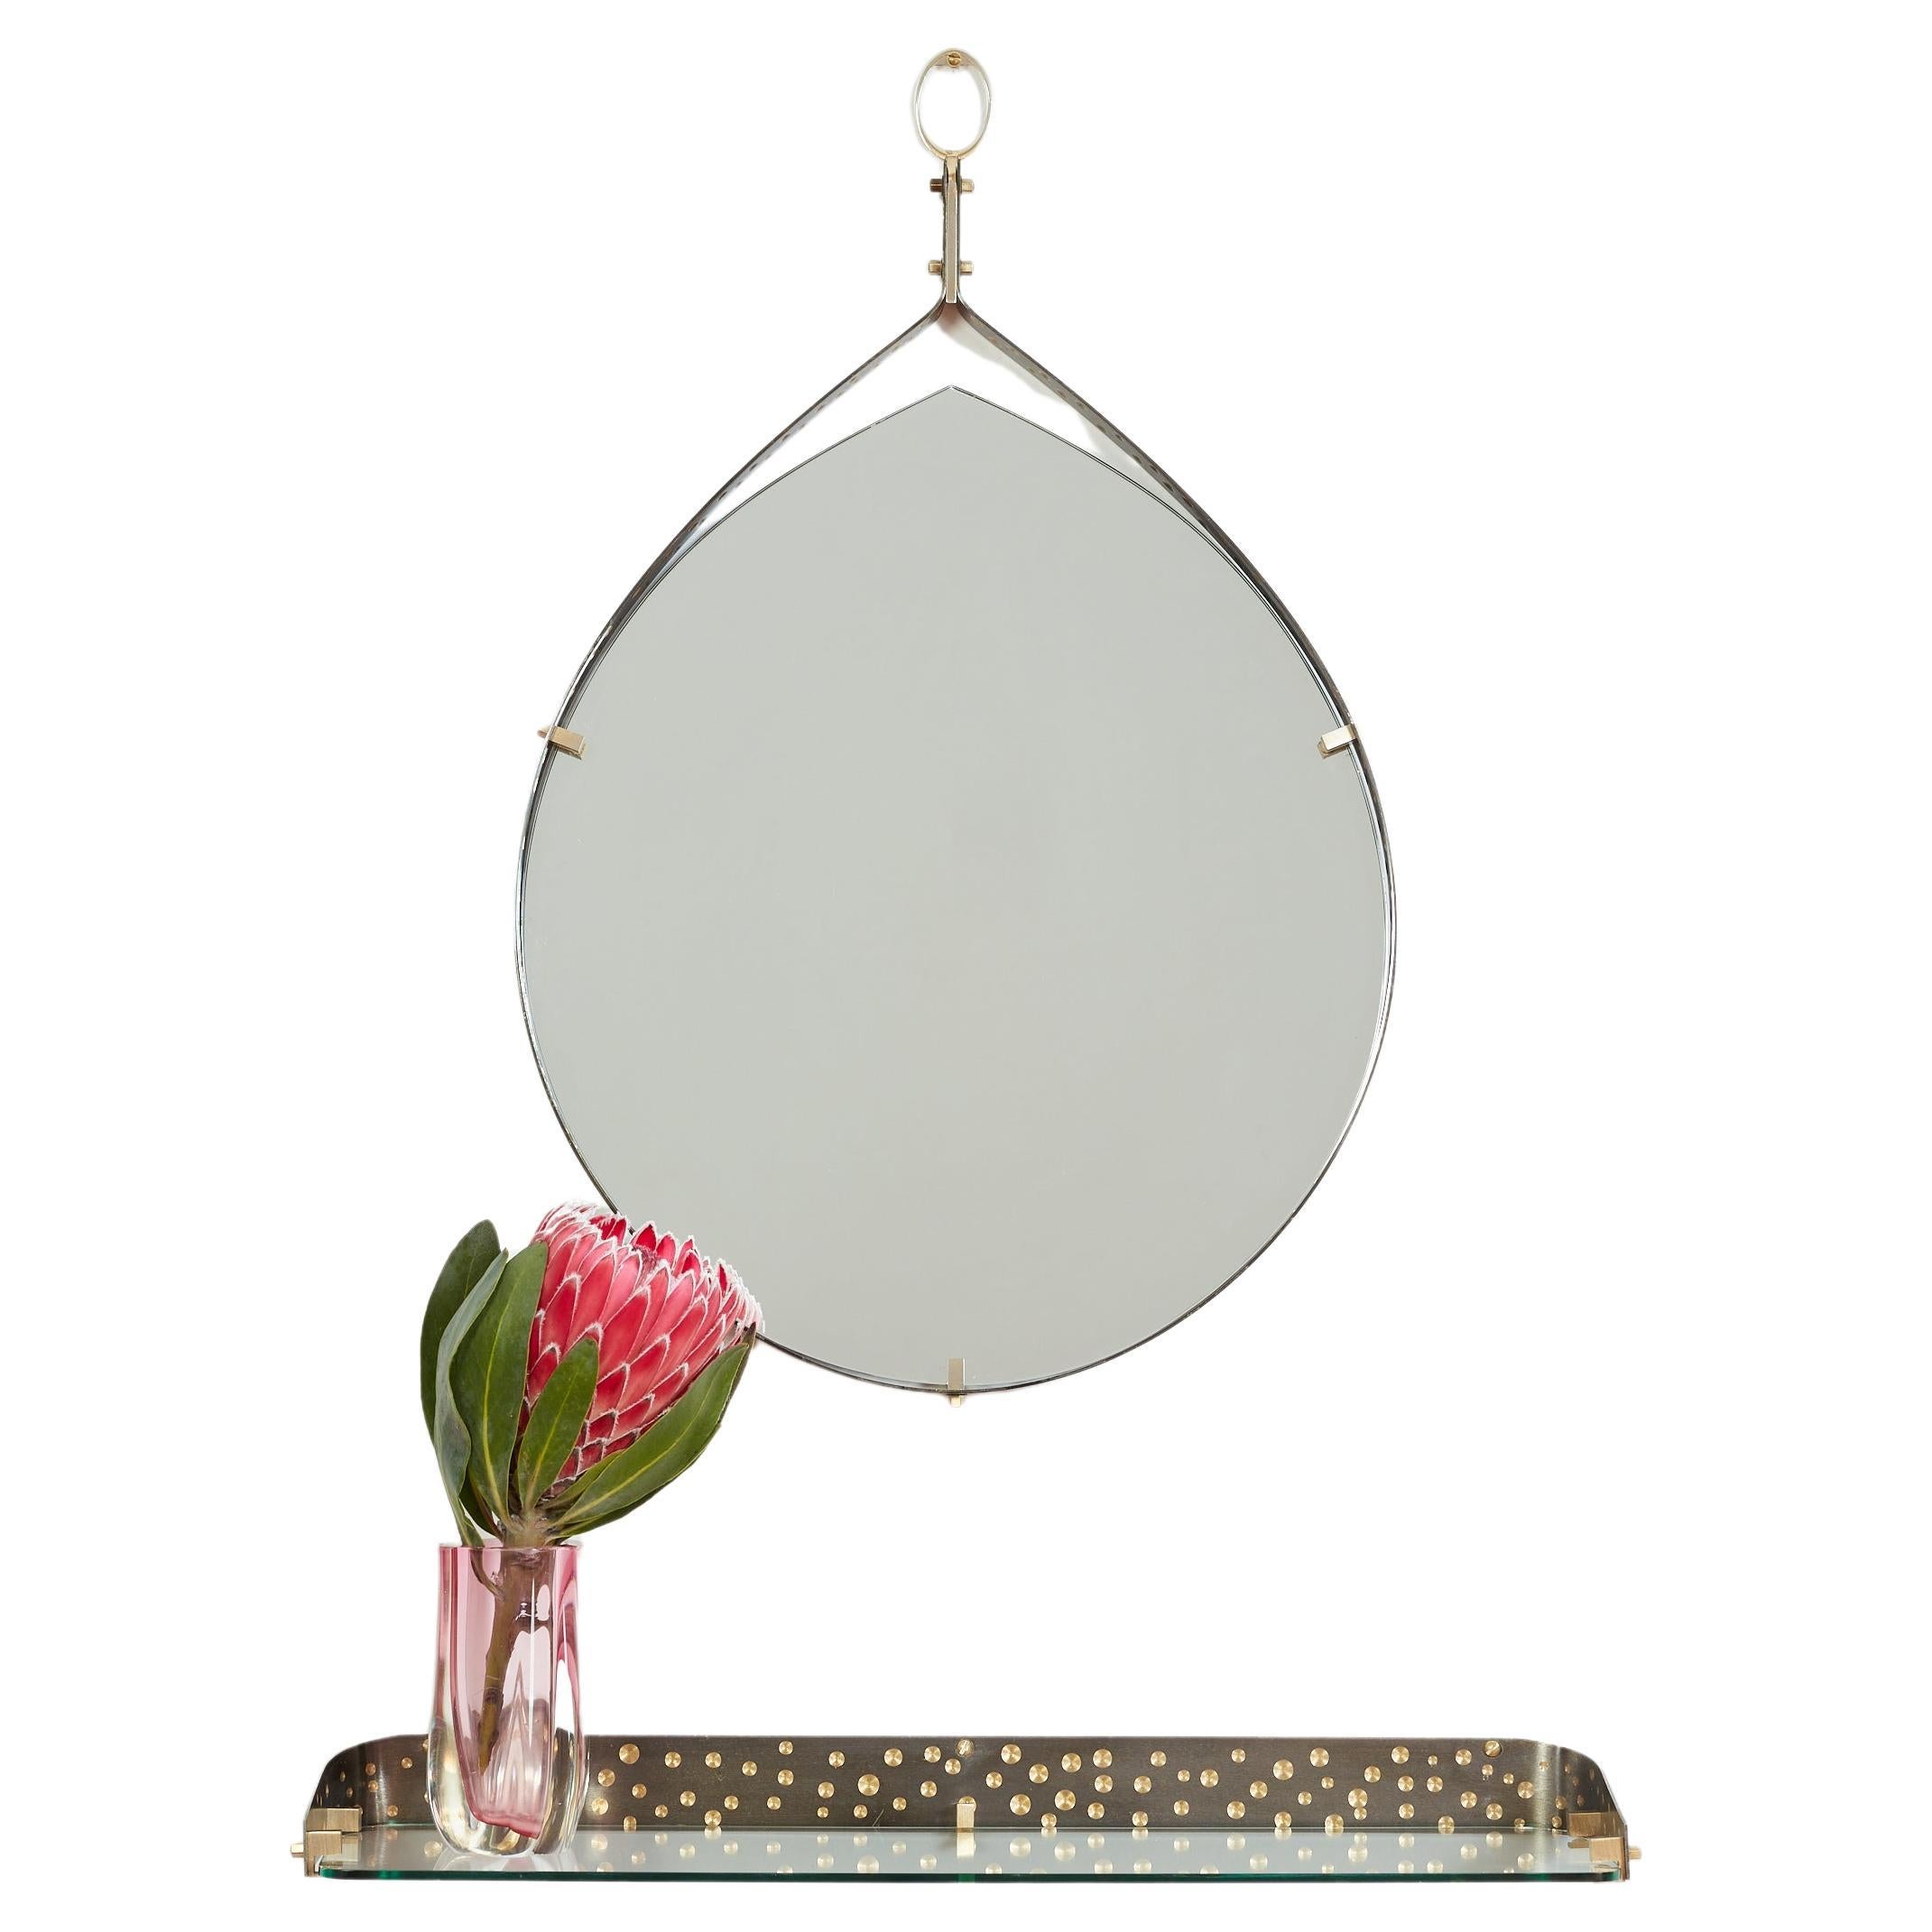 Miroir italien des années 1950 en fer argenté et laiton, de forme larmoyante, avec des détails en laiton perforé sur le bord.  
Conçu par Ambrogio  & De Berti - Italie, années 1950 - ce miroir est doté d'une console en verre flottante assortie.